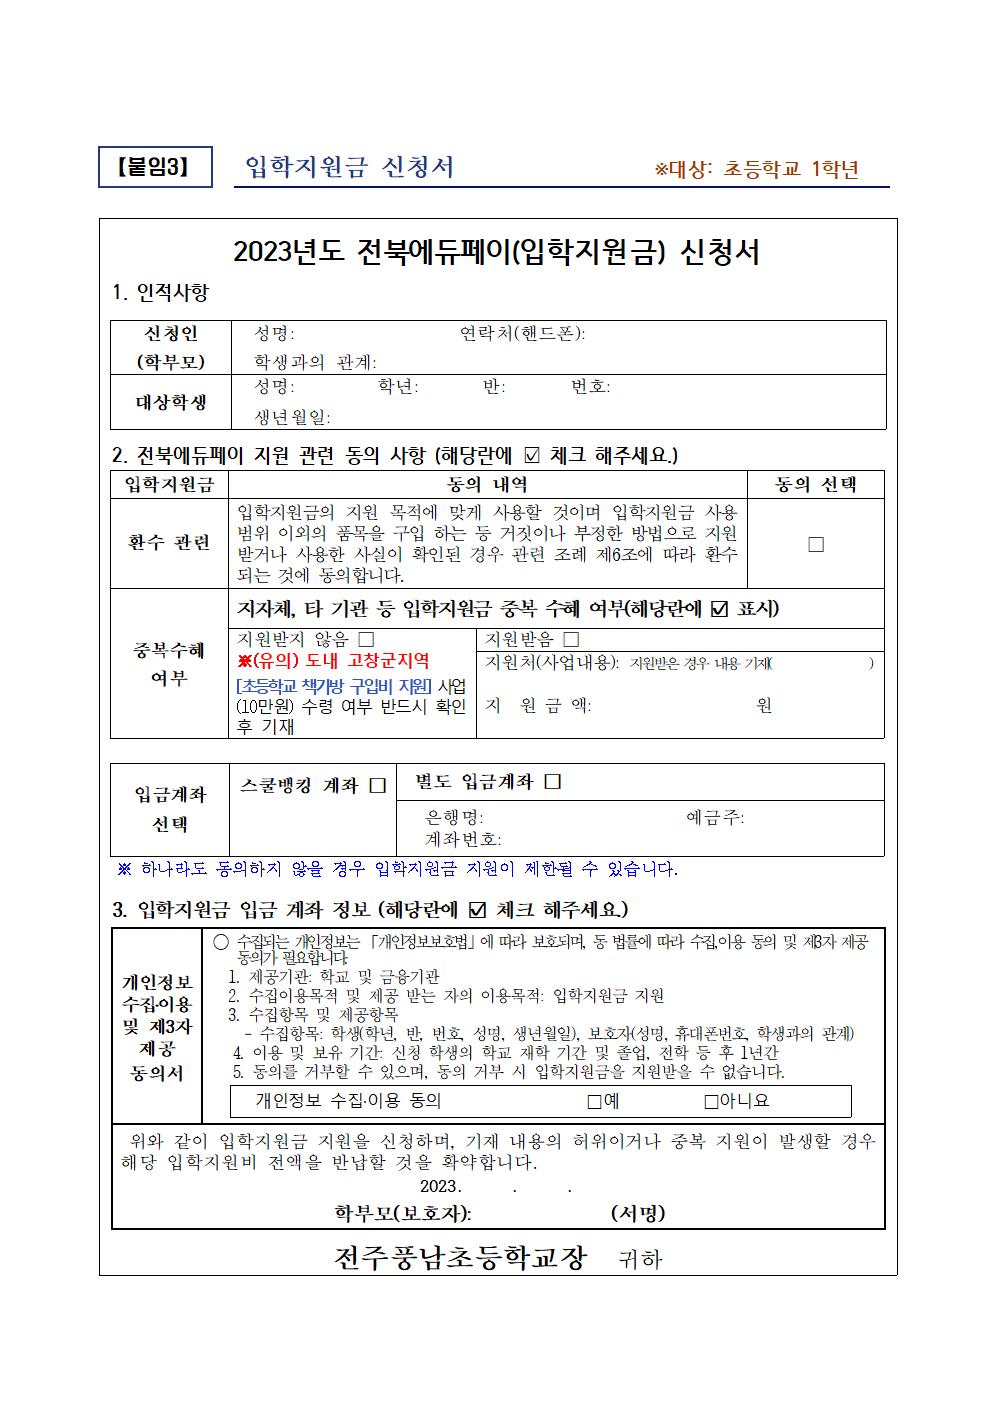 초등학교 입학지원금 신청 안내문(1학년)002